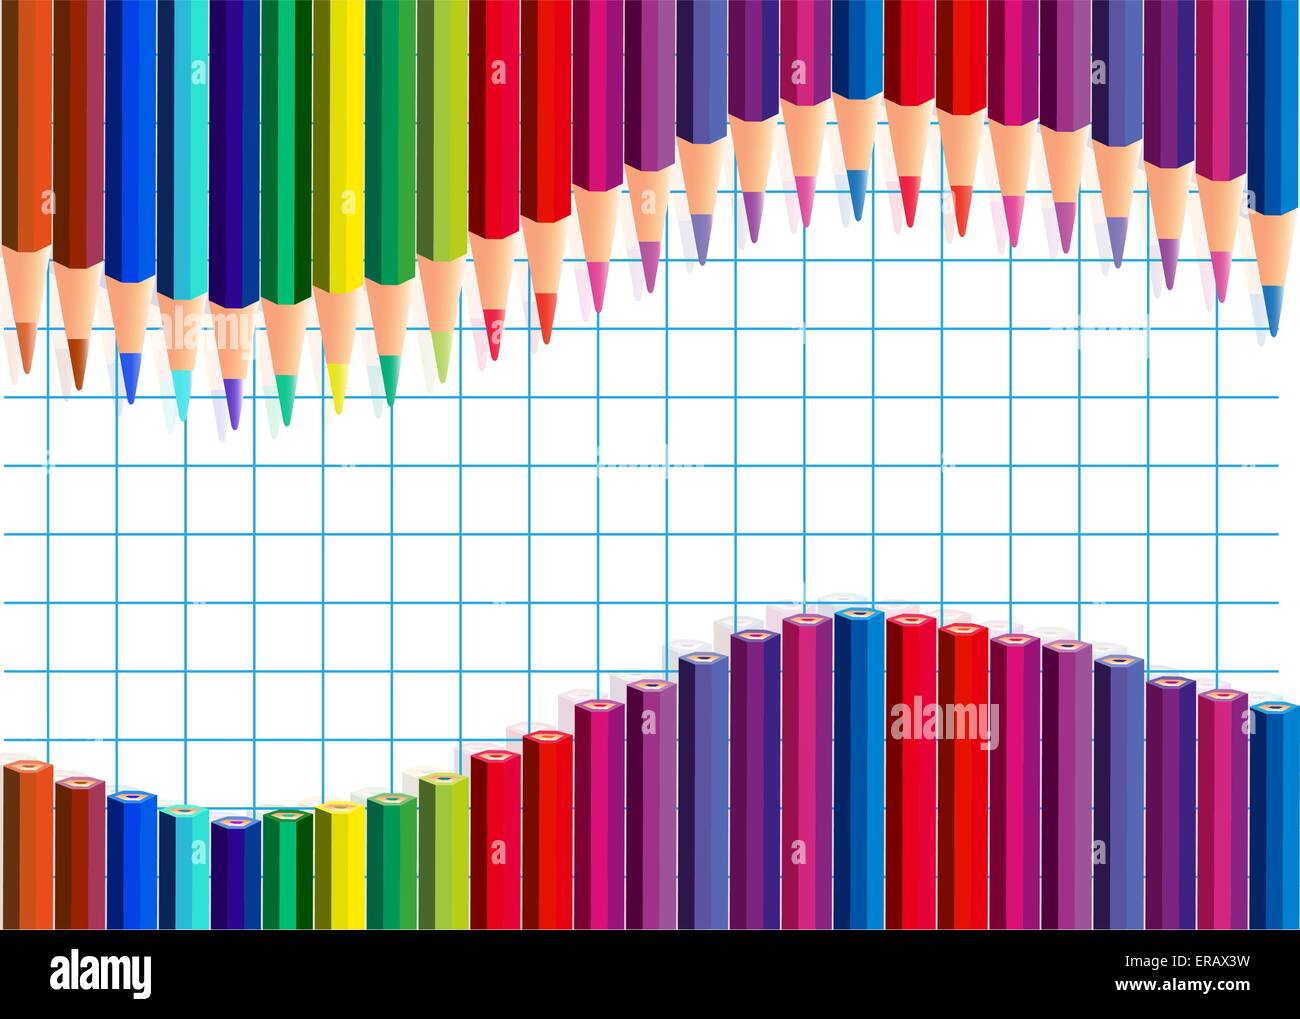 Farbe Bleistifte Welle auf einem Karopapier. Vektor-Illustration. Transparenz und Verlaufsgitter nicht verwendet Stock Vektor